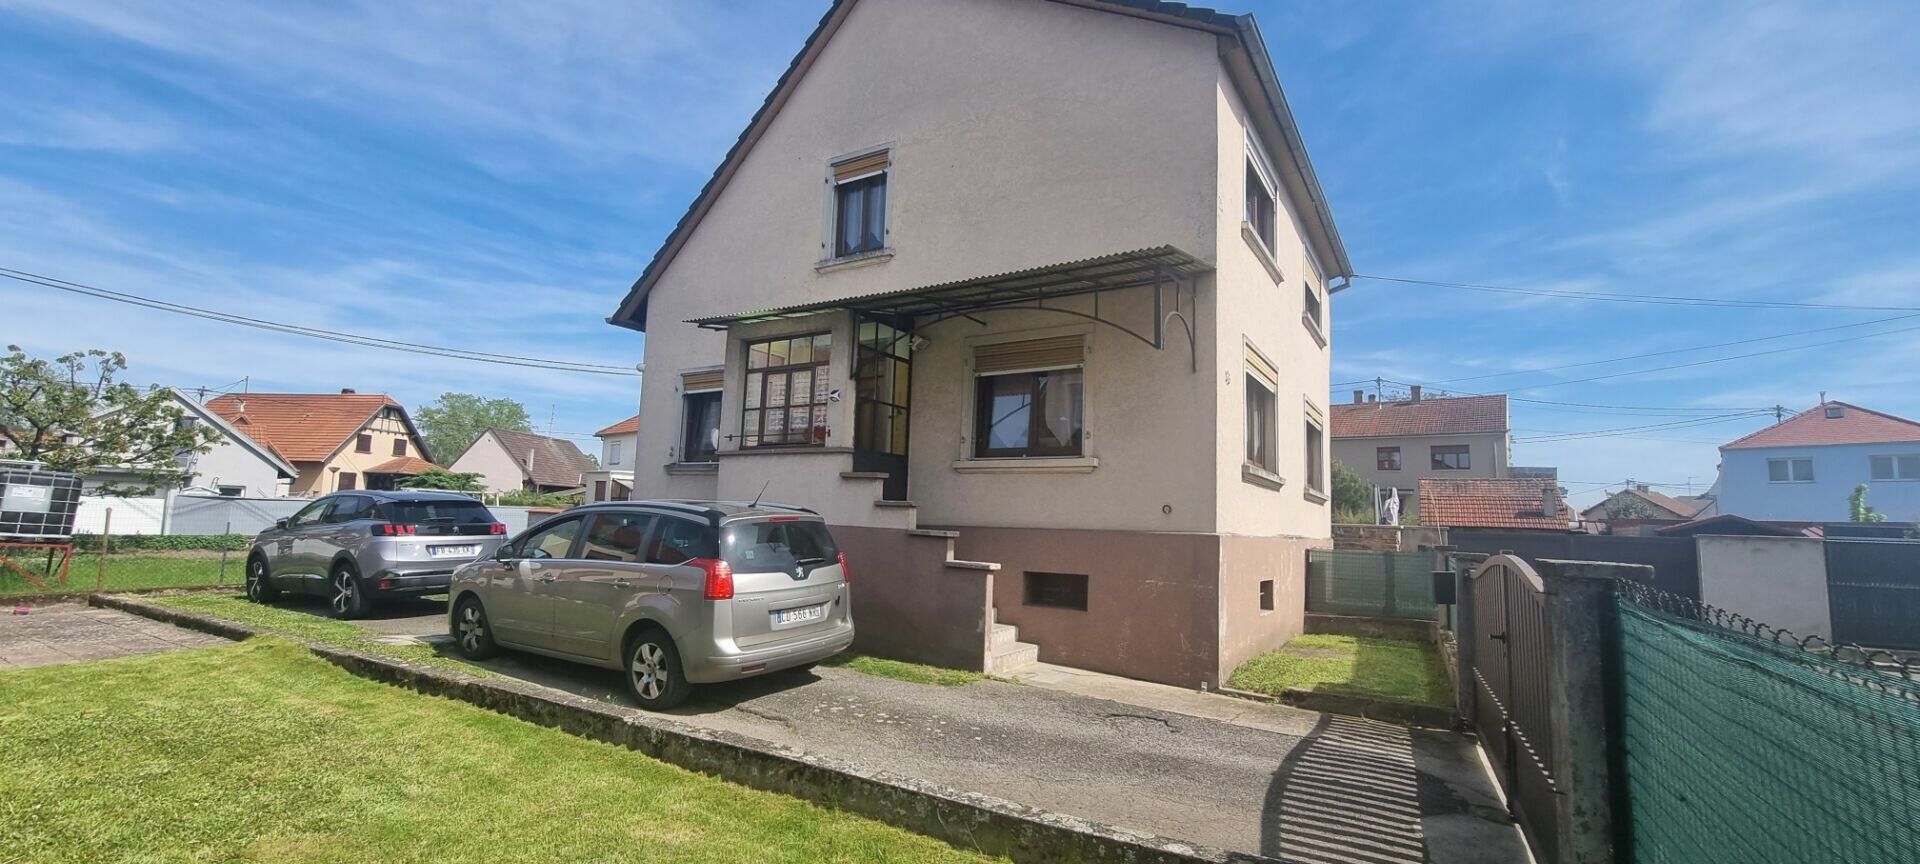 Maison à vendre 4 128m2 à Weyersheim vignette-1